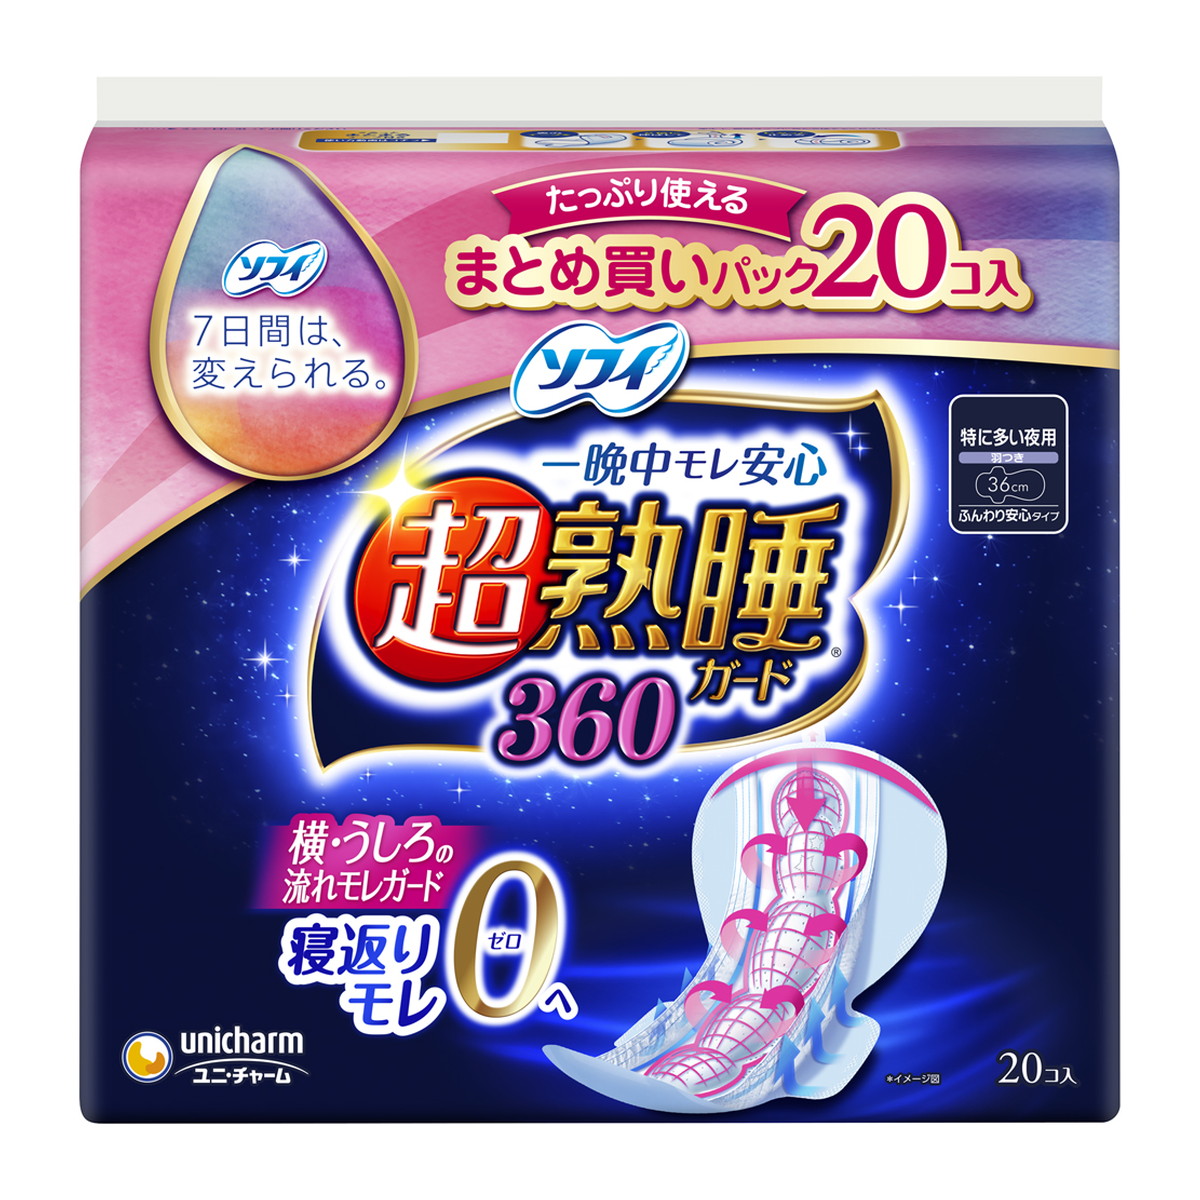 ユニ・チャーム ソフィ 超熟睡 ガード 360 まとめ買いパック 20枚入